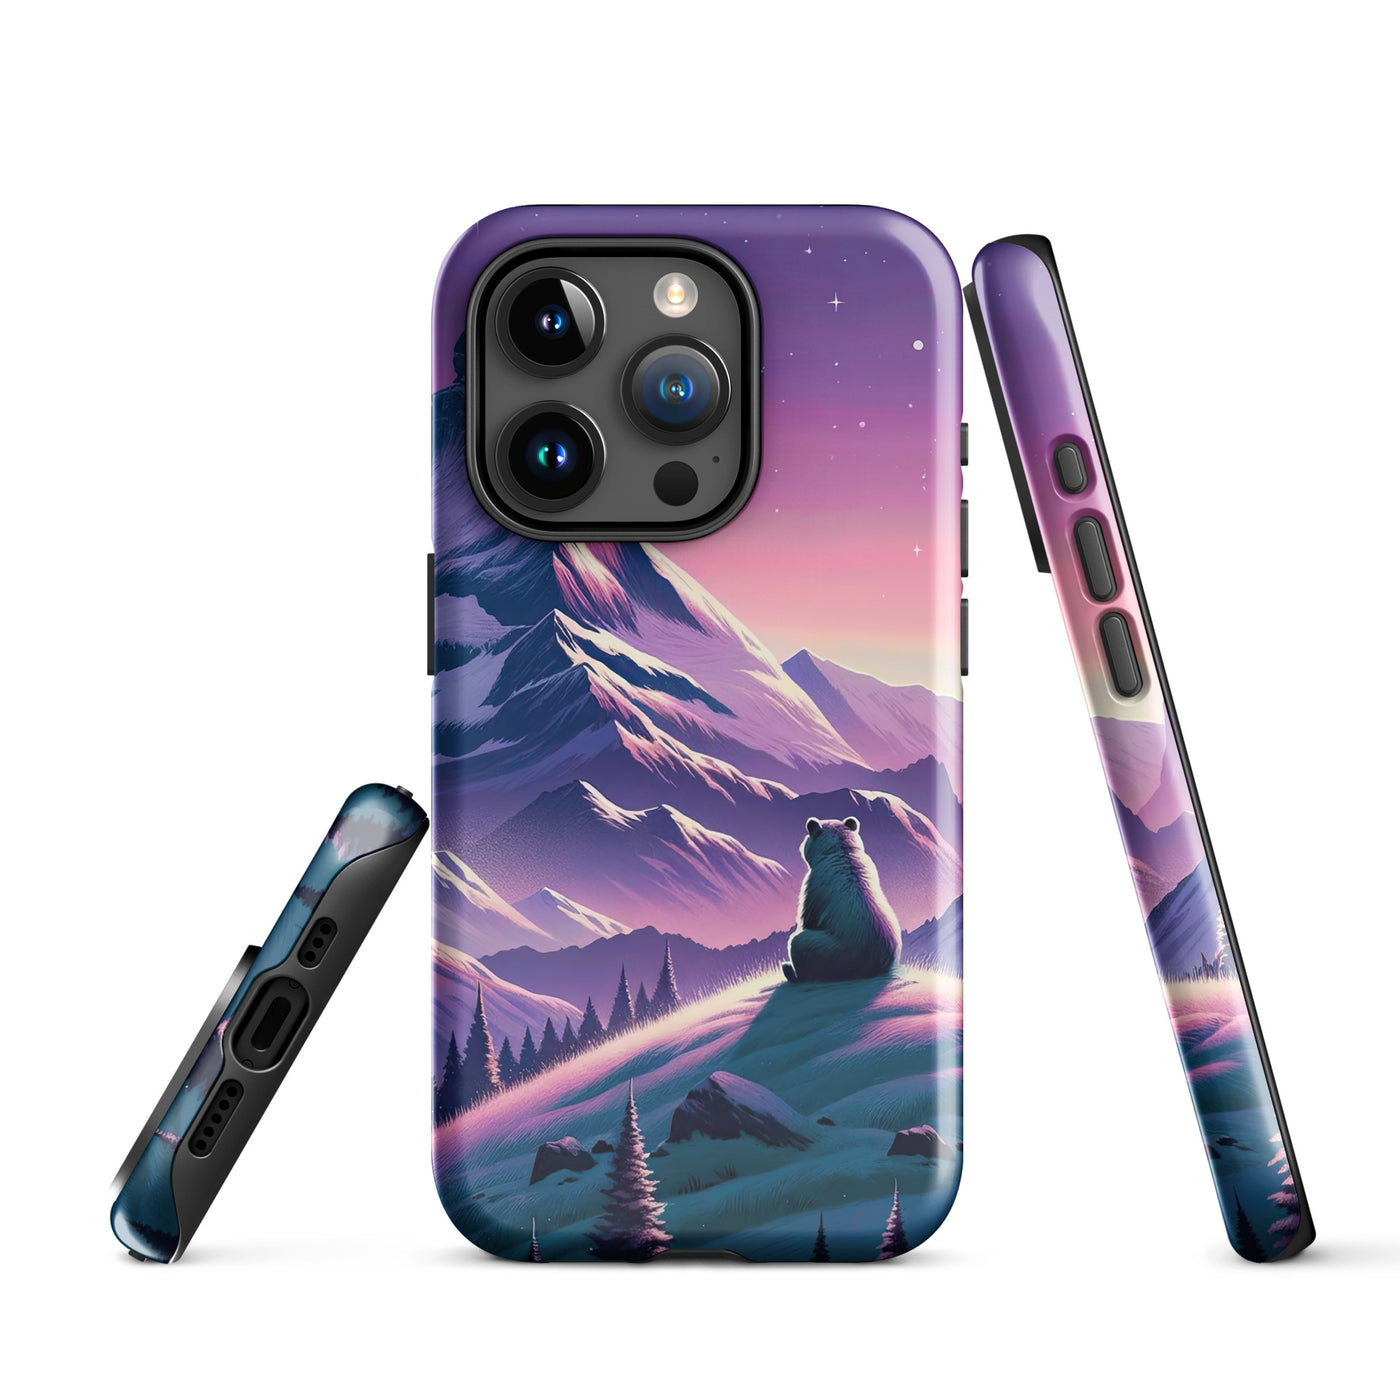 Bezaubernder Alpenabend mit Bär, lavendel-rosafarbener Himmel (AN) - iPhone Schutzhülle (robust) xxx yyy zzz iPhone 15 Pro